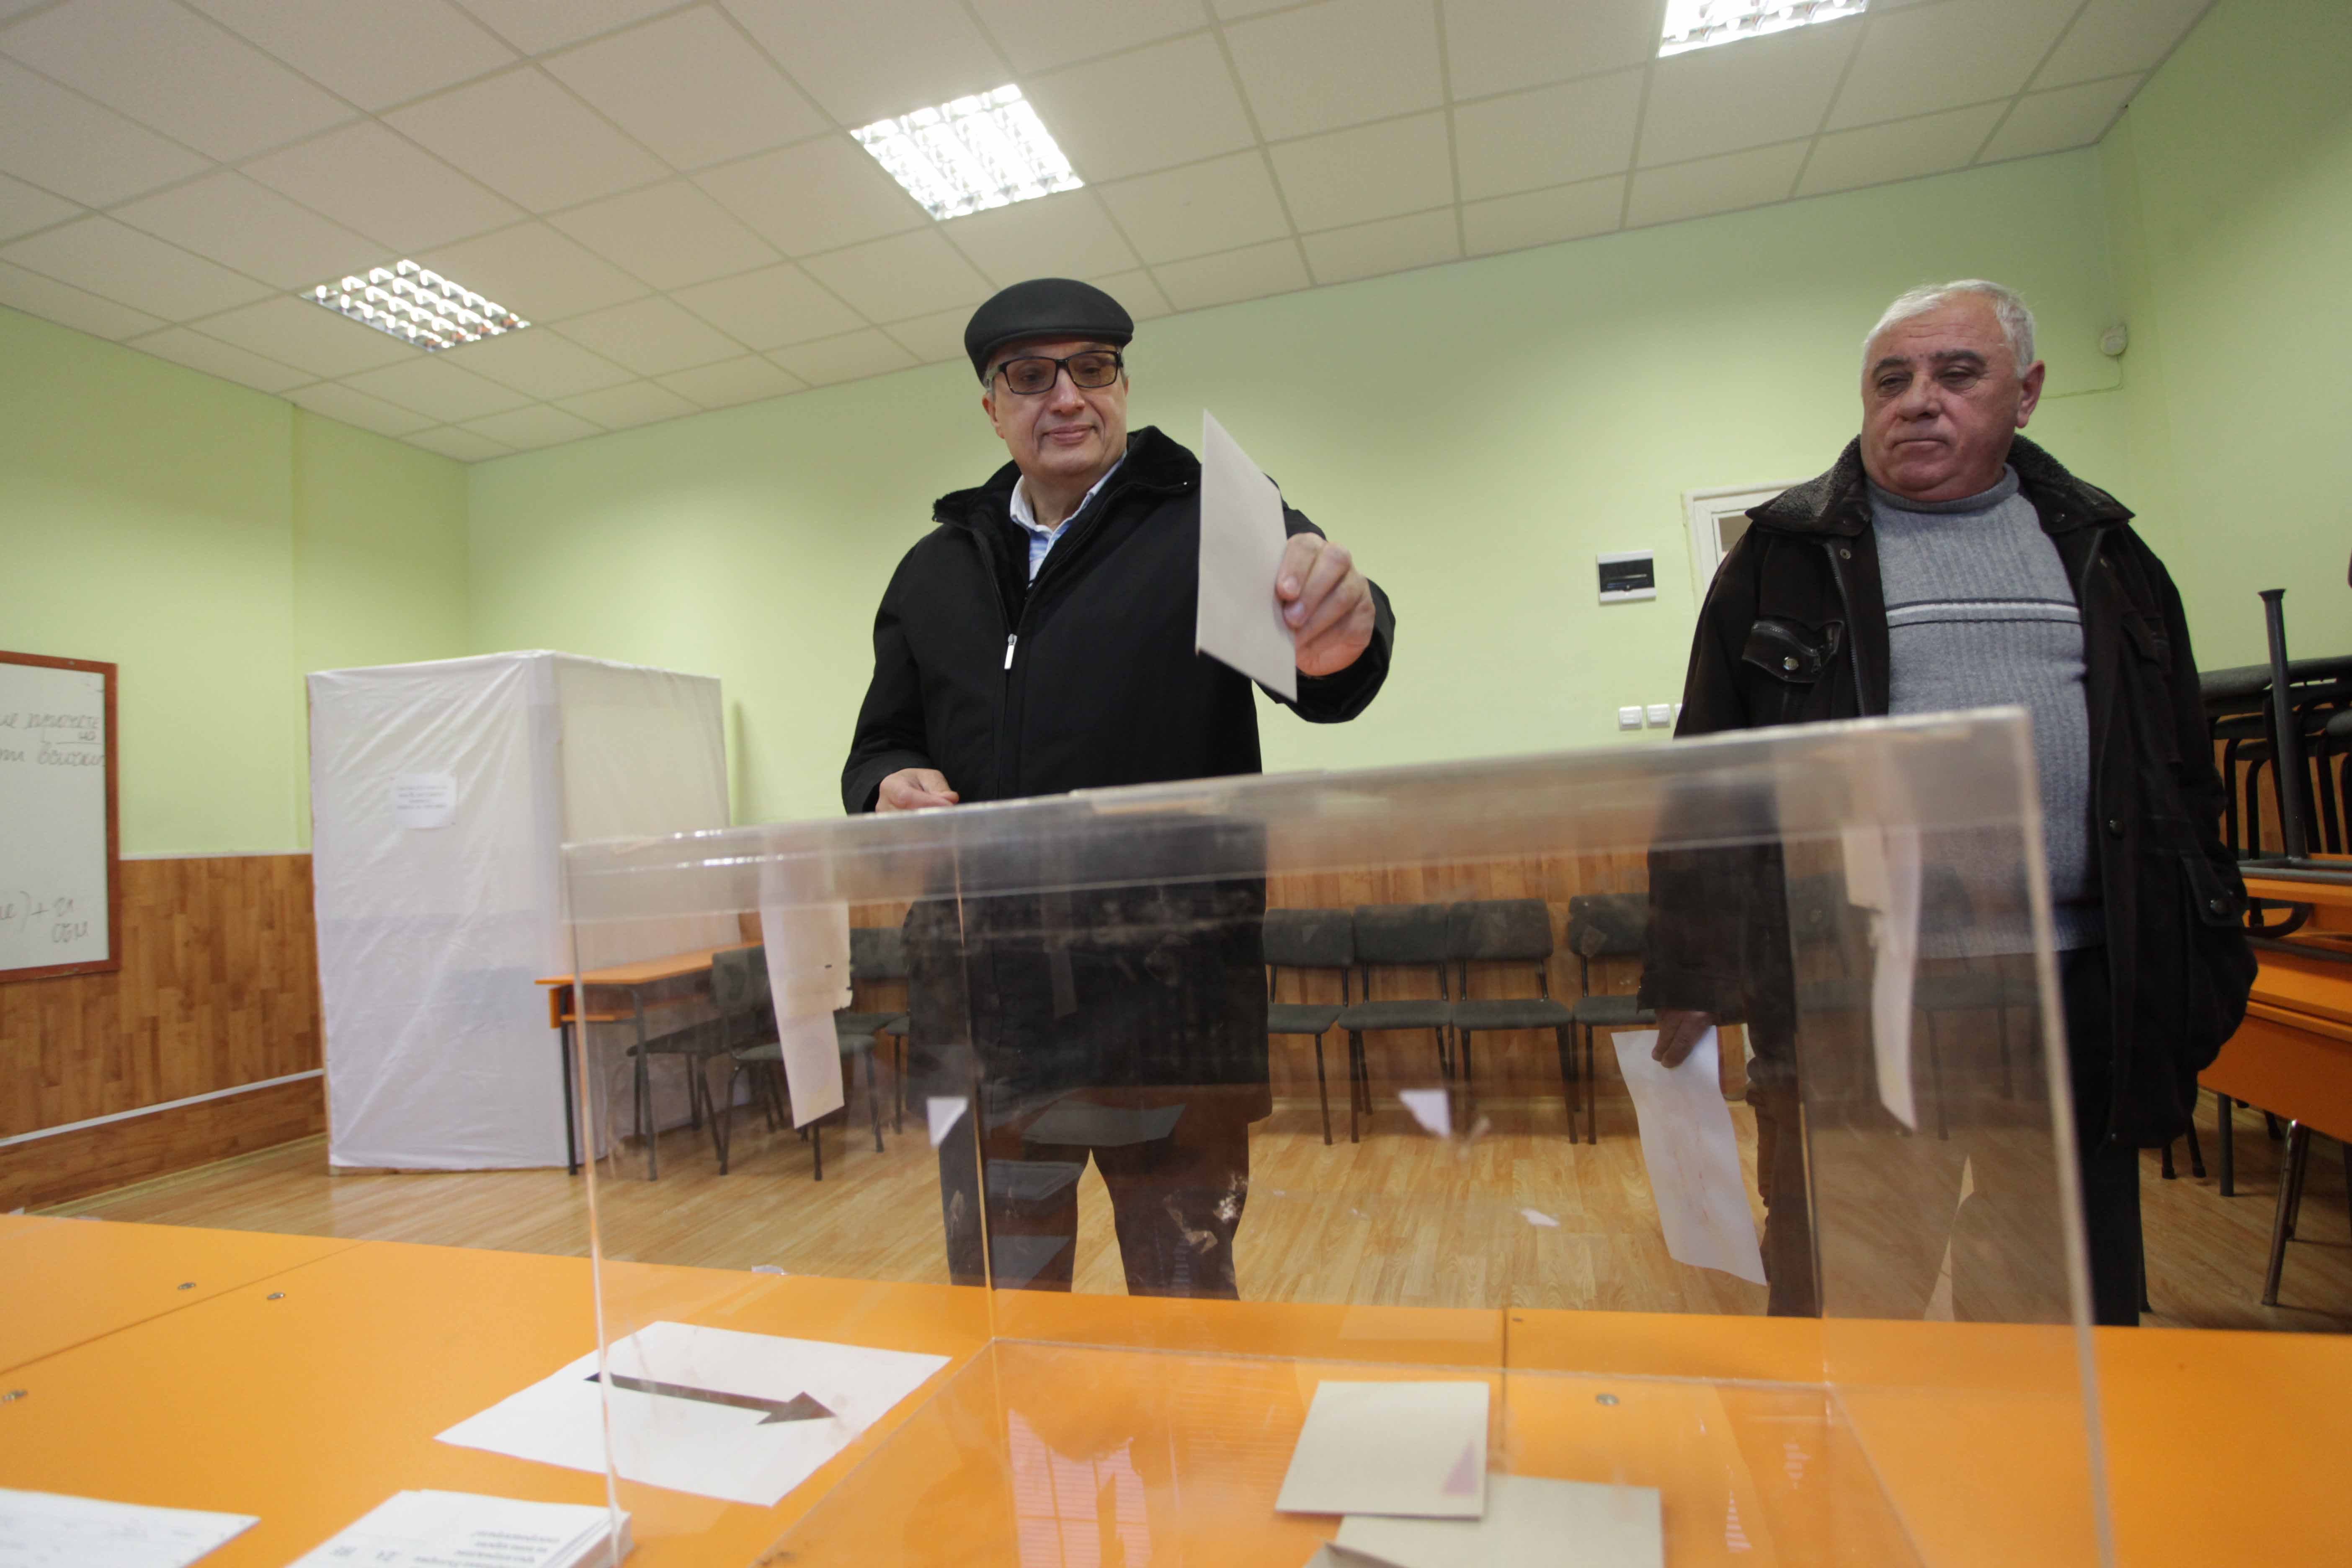 Костов го удари на политика в деня на референдума